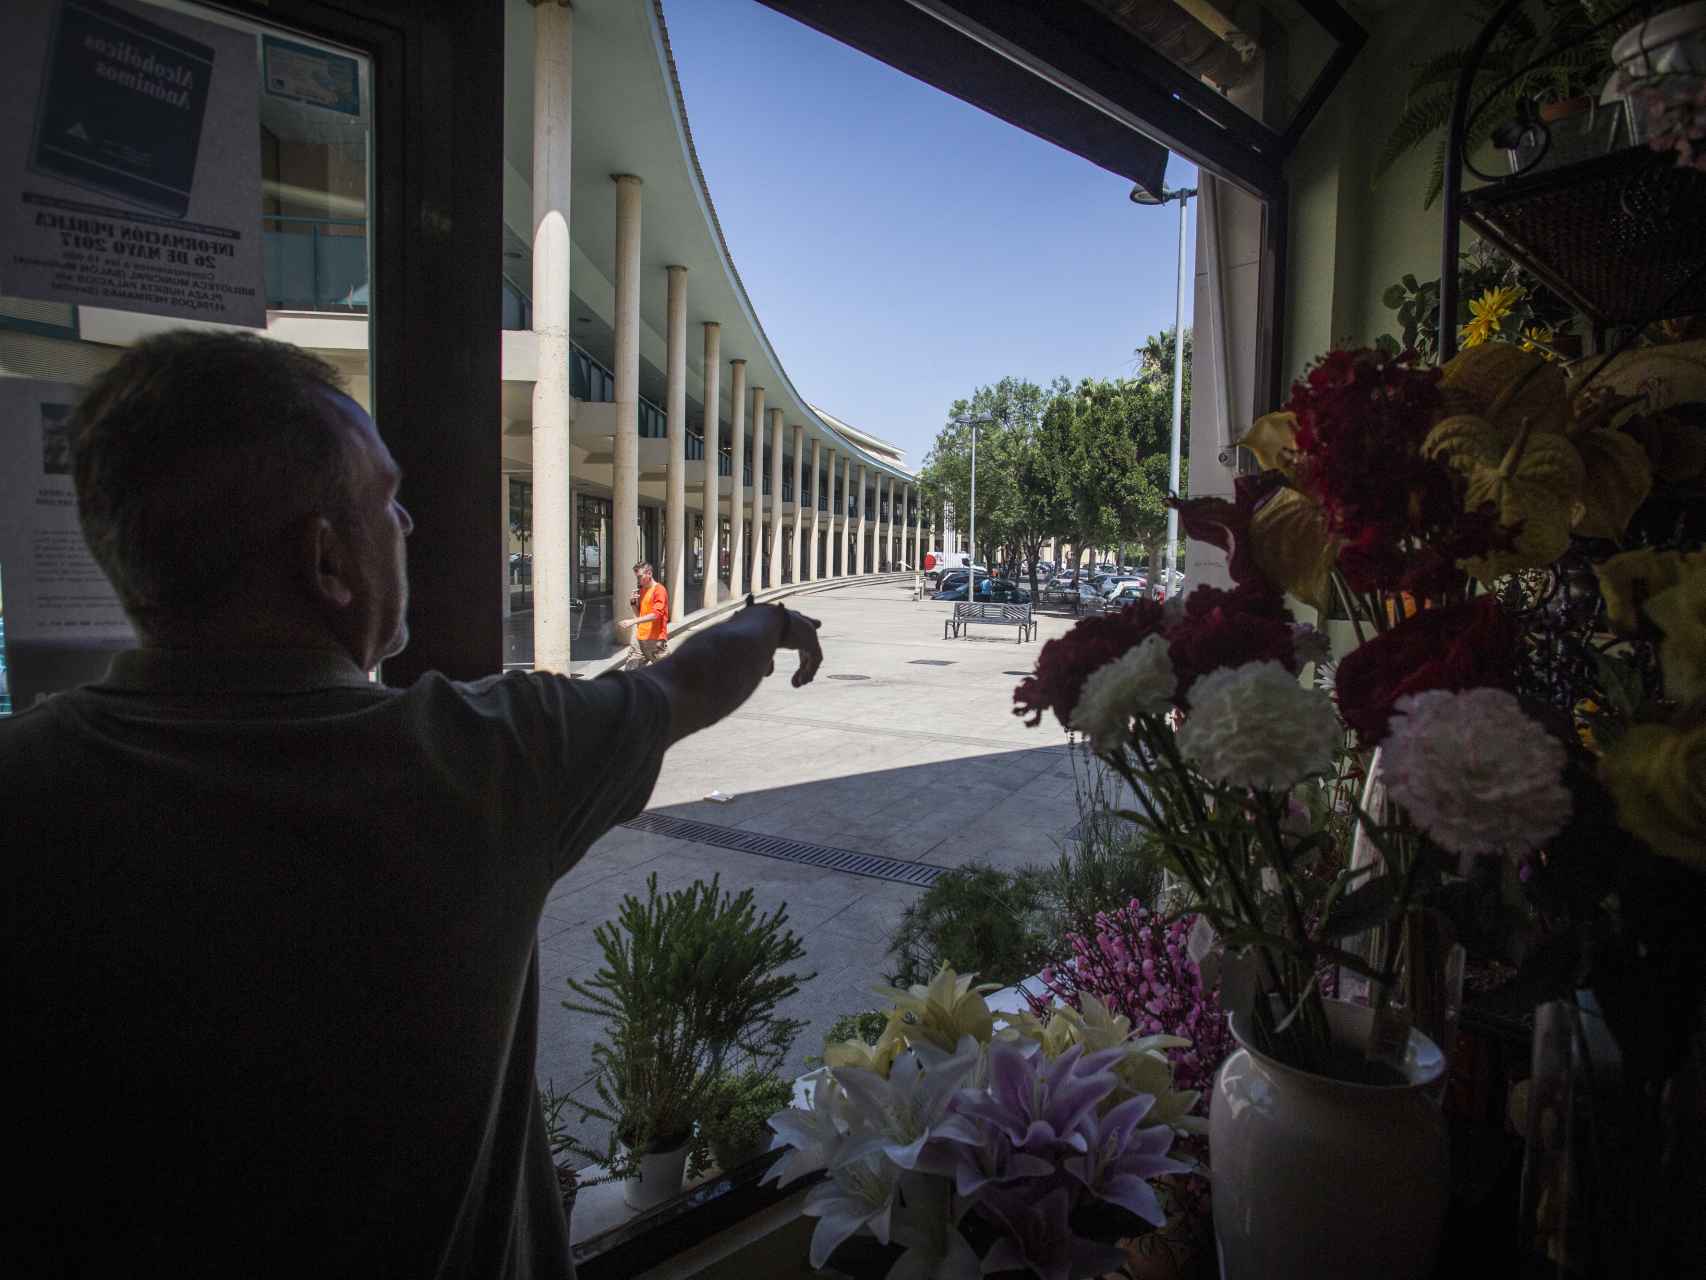 Un empleado de una floristería mostrando el lugar que frecuentaba Luis Miguel Briz Torrico los días previos al asesinato, hablando desde su móvil de manera enérgica.